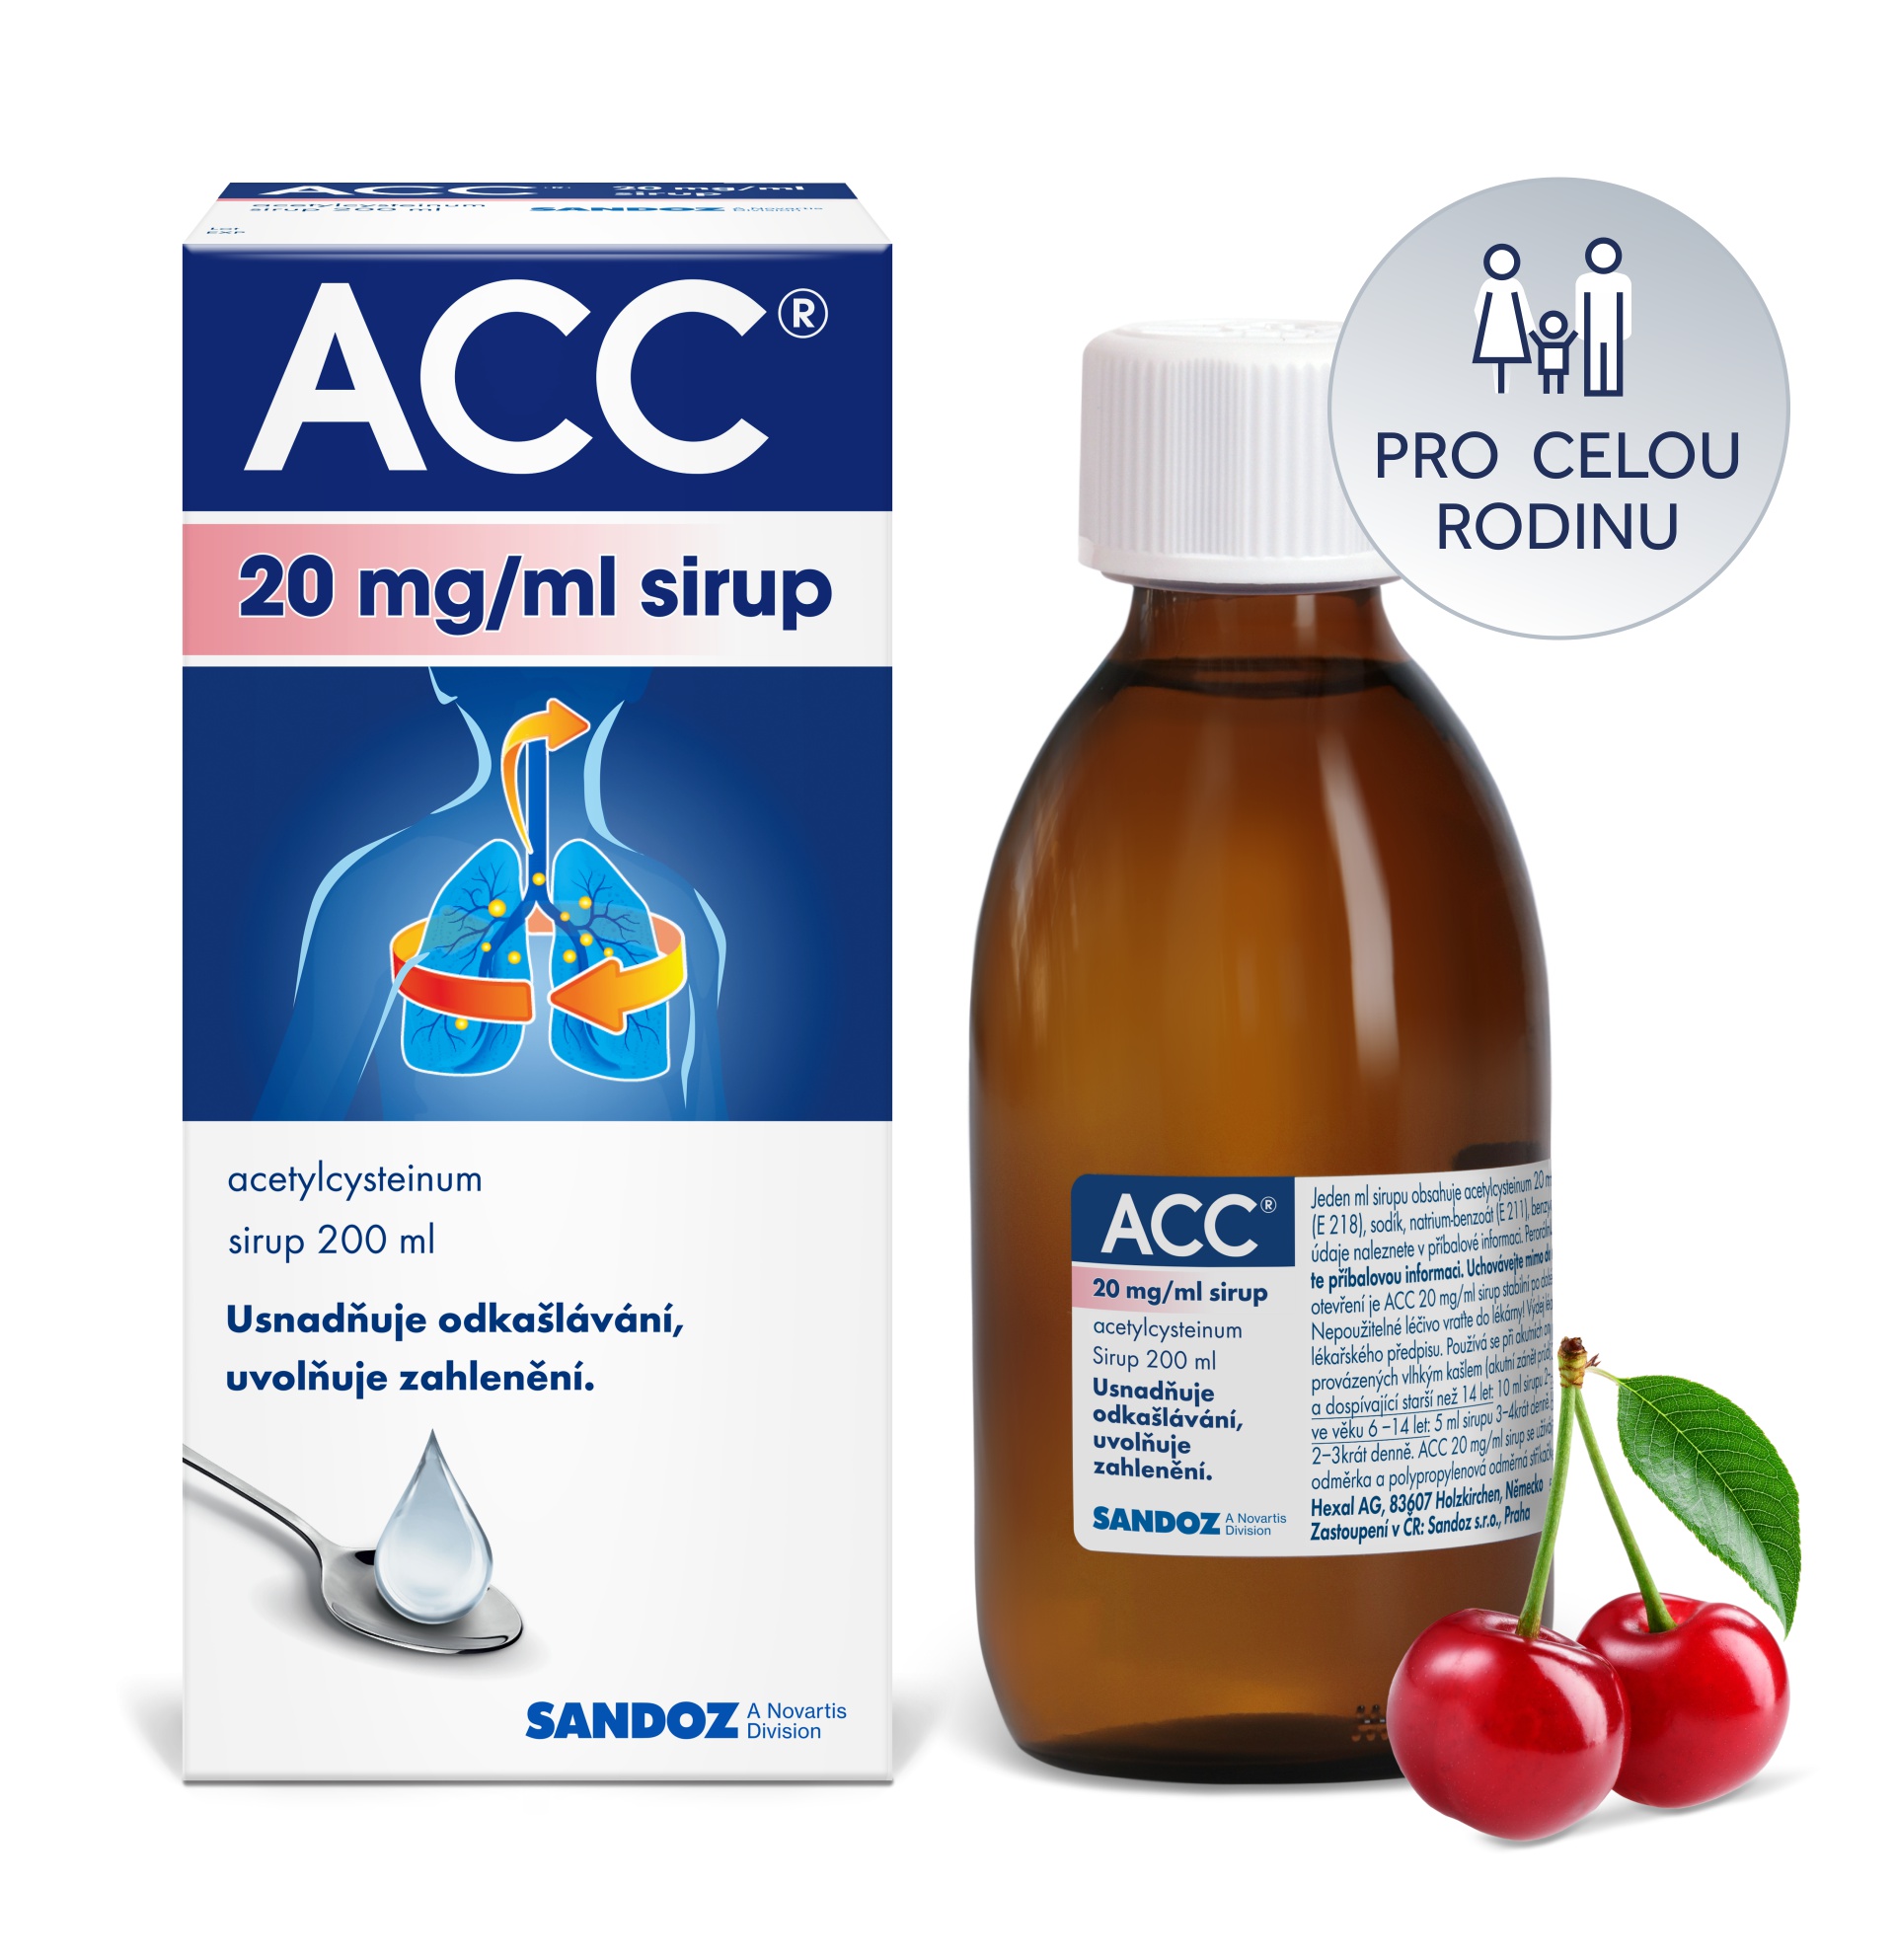 Obrázek ACC 20 mg sirup 200 ml